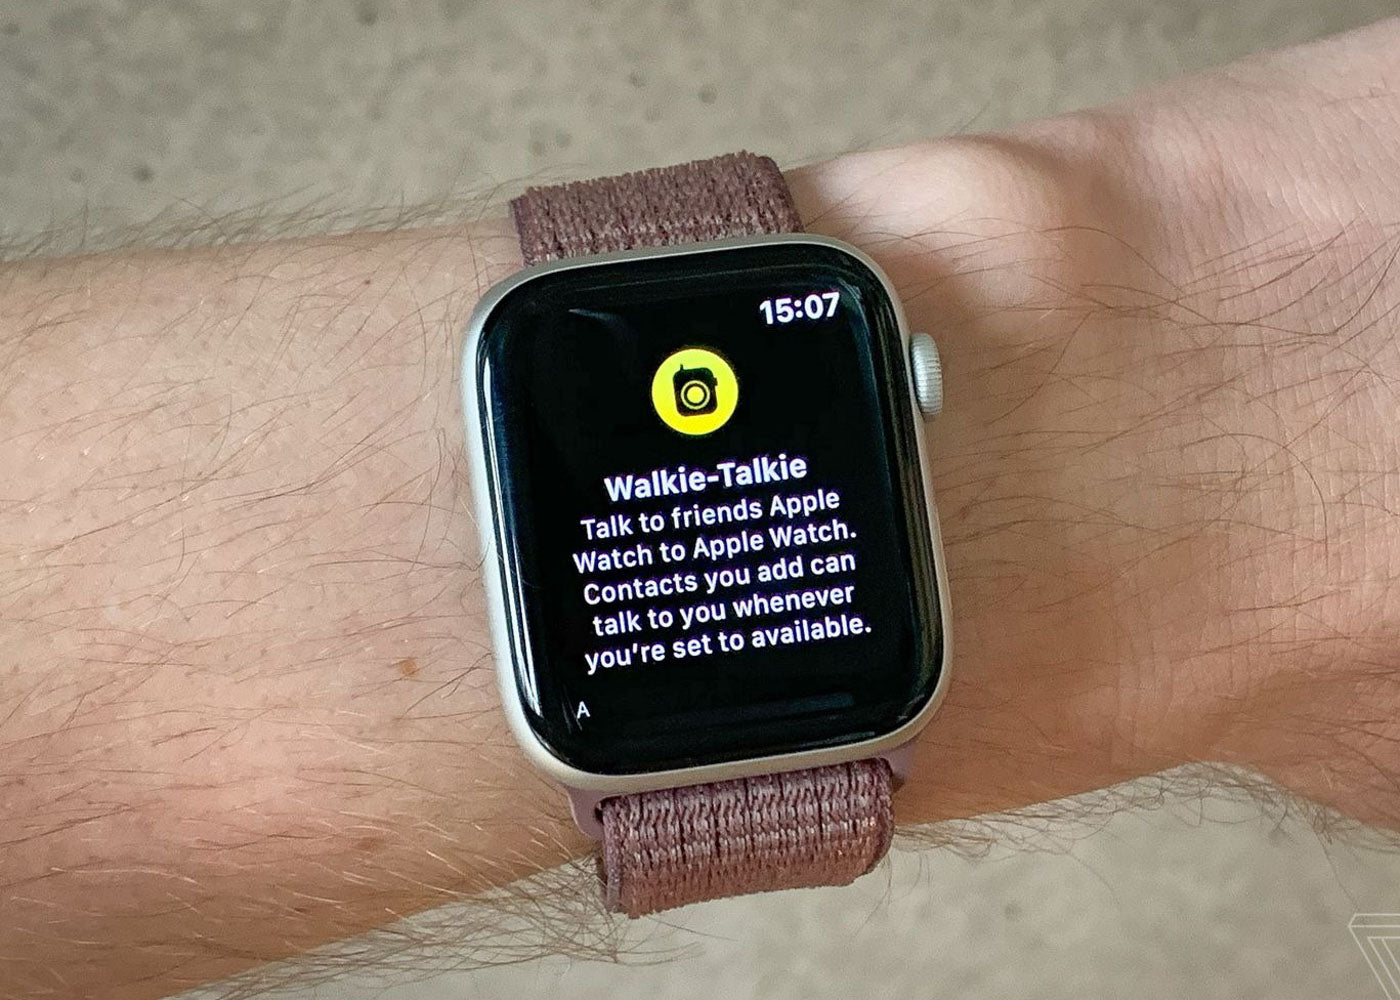 Apple Watch walkie talkie app